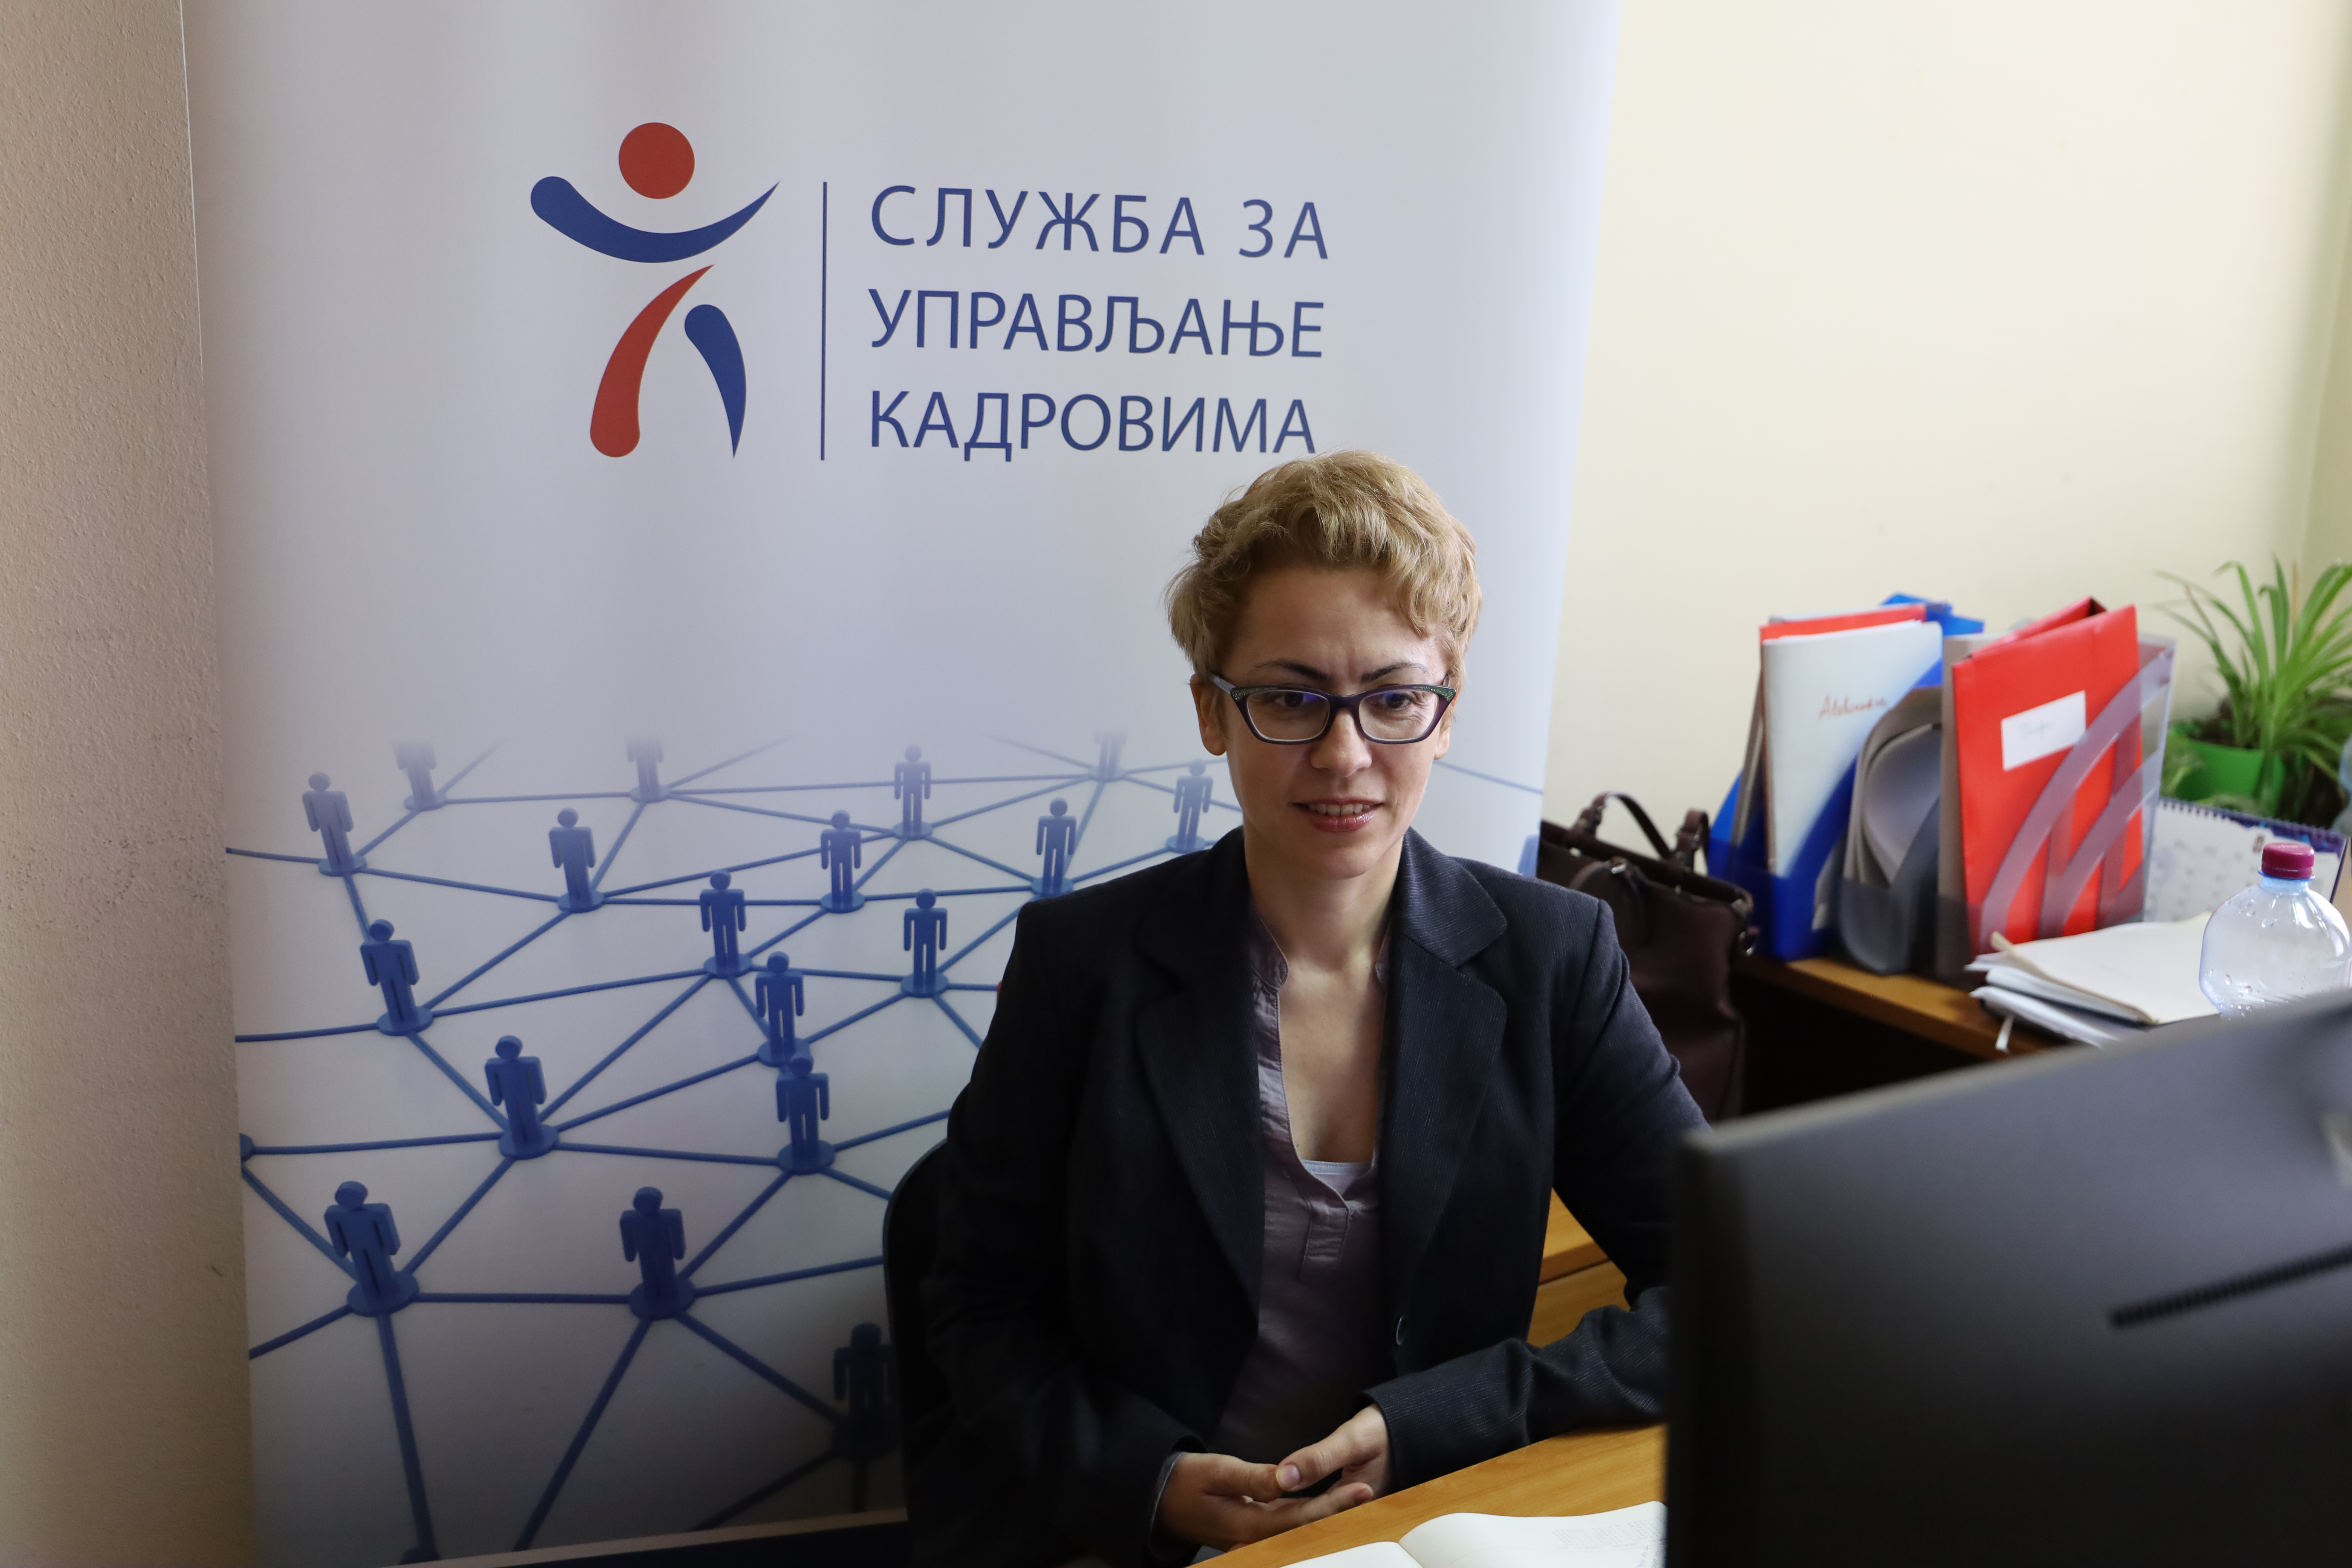 Србија - пример добре праксе запошљавања и вредновања радне успешности државних службеника